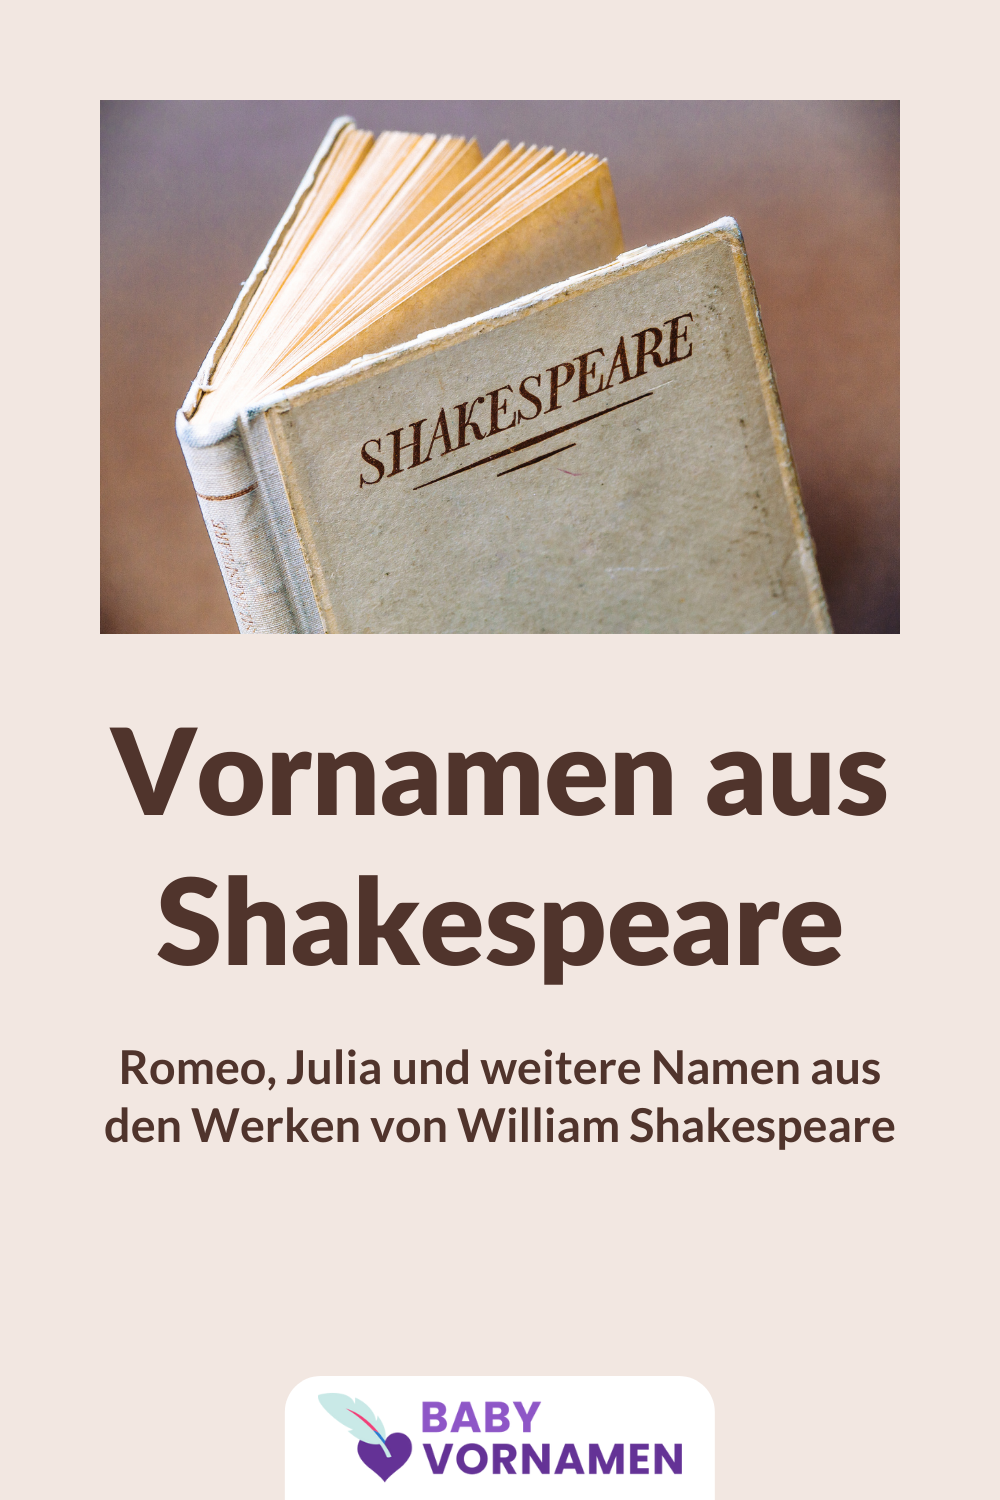 Vornamen aus den Werken von William Shakespeare